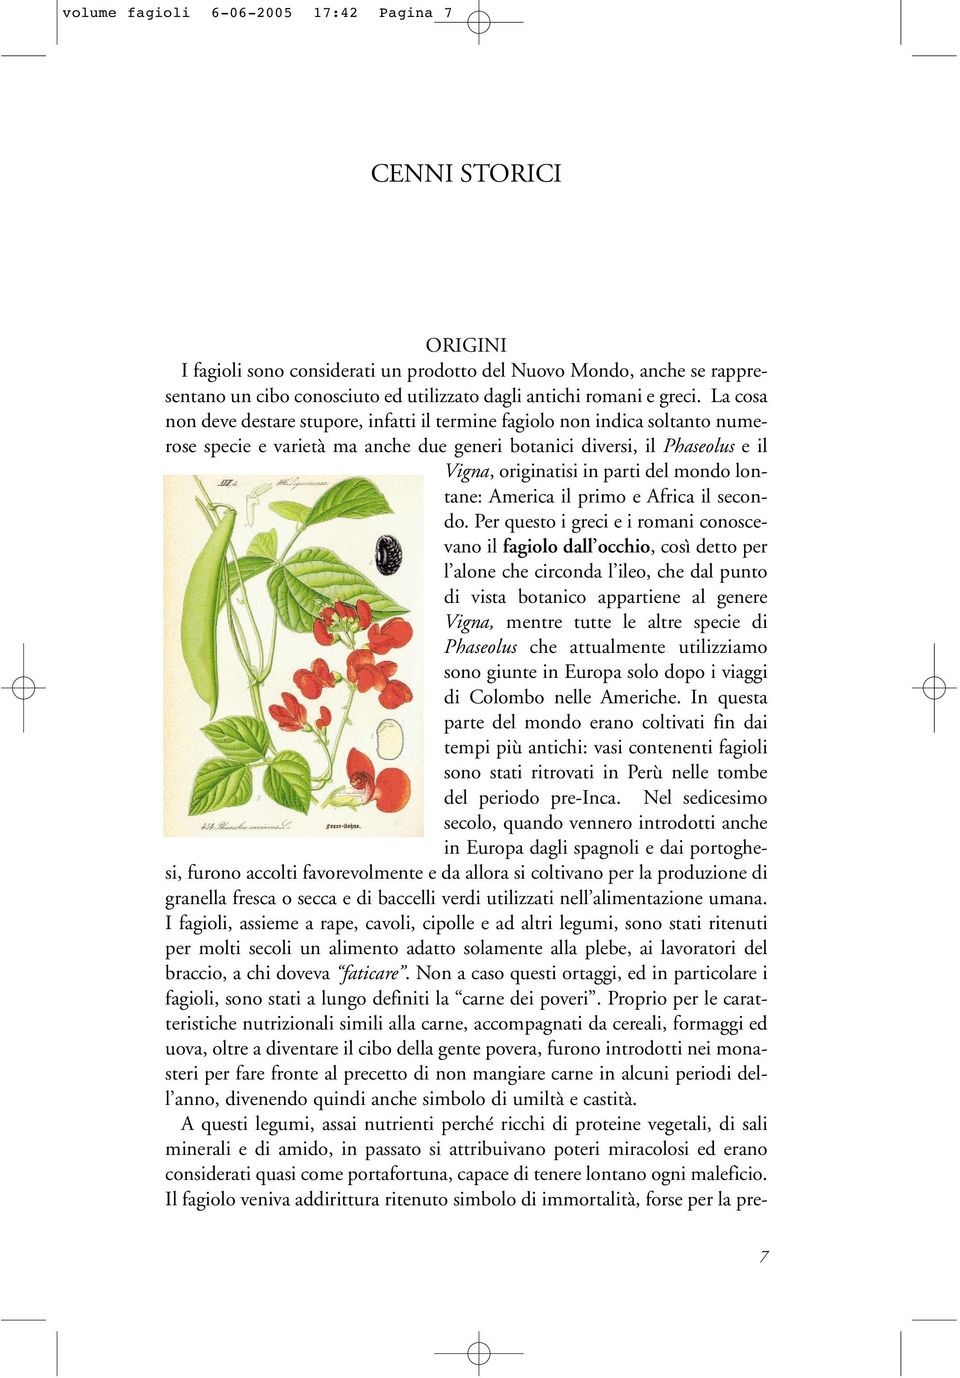 La cosa non deve destare stupore, infatti il termine fagiolo non indica soltanto numerose specie e varietà ma anche due generi botanici diversi, il Phaseolus e il Vigna, originatisi in parti del